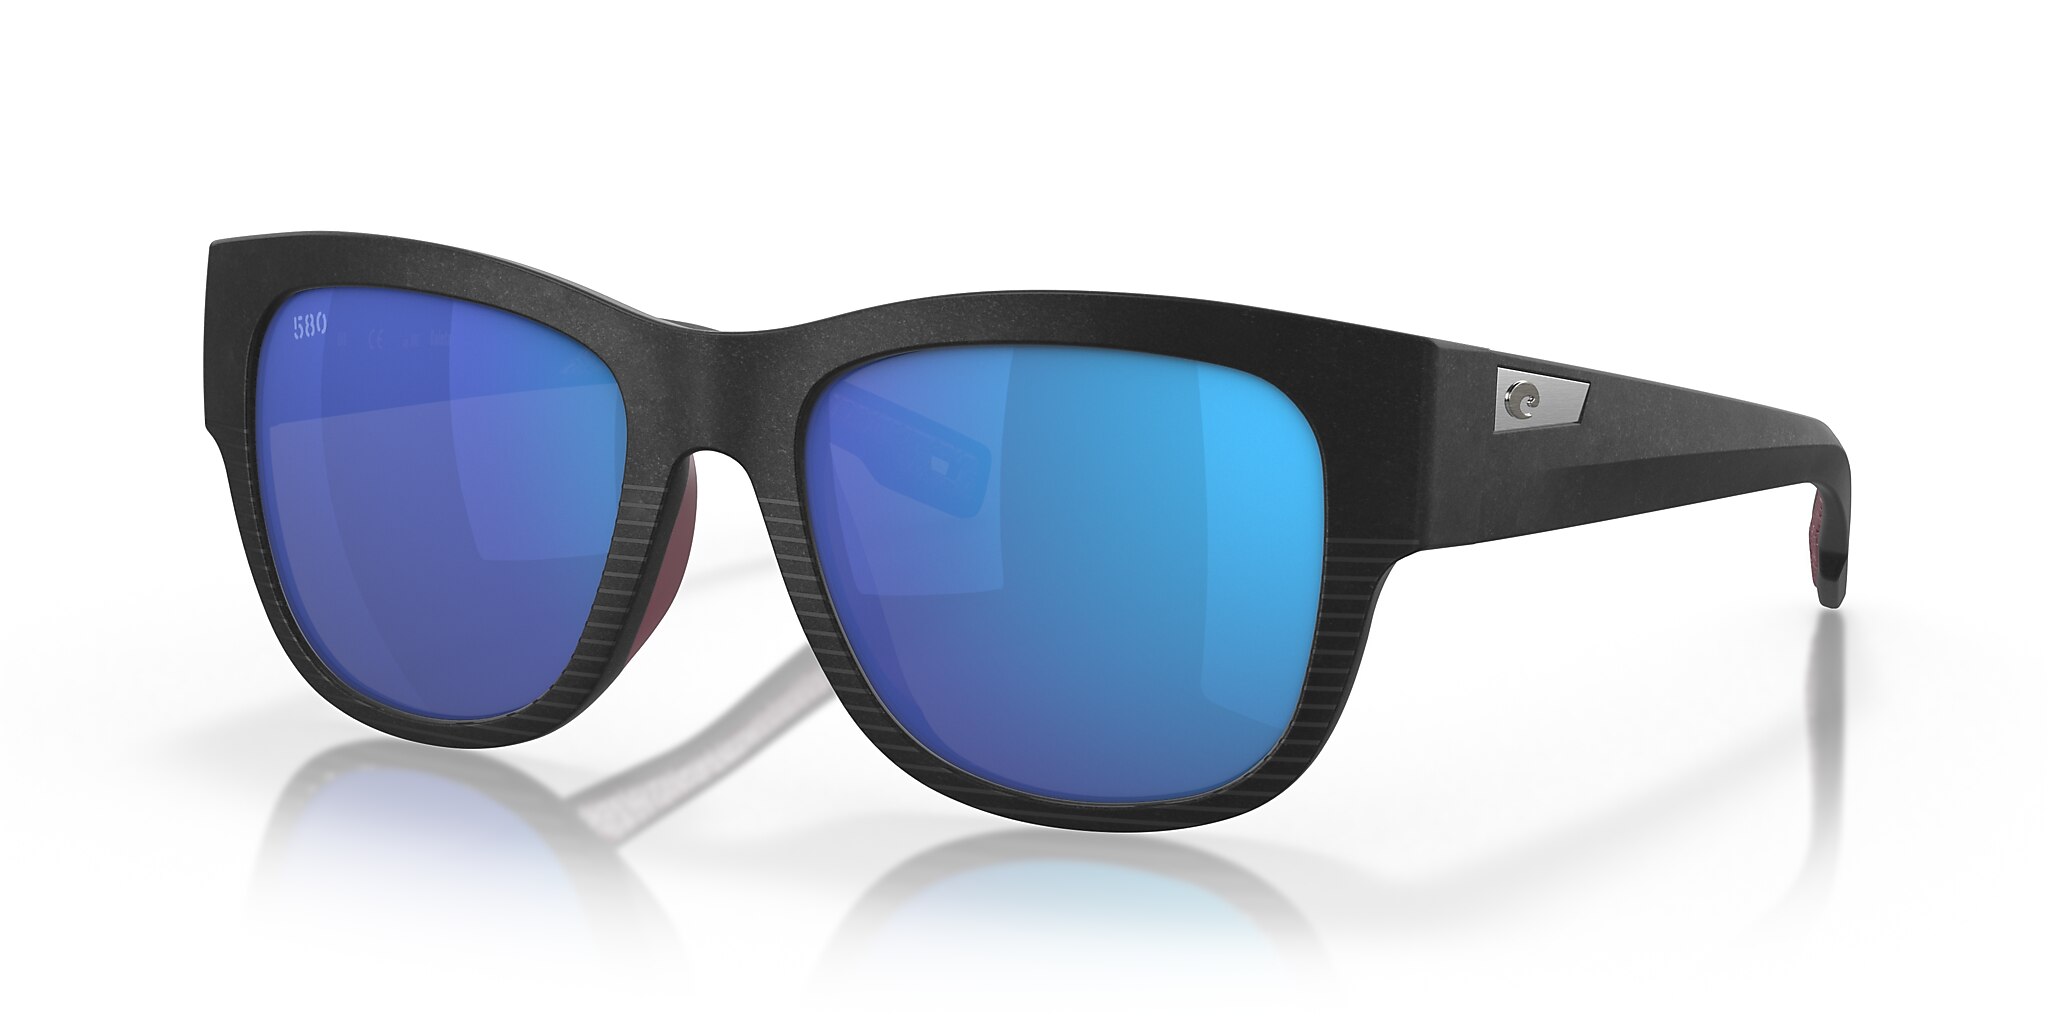 Caleta Polarized Sunglasses in Blue Mirror | Costa Del Mar®